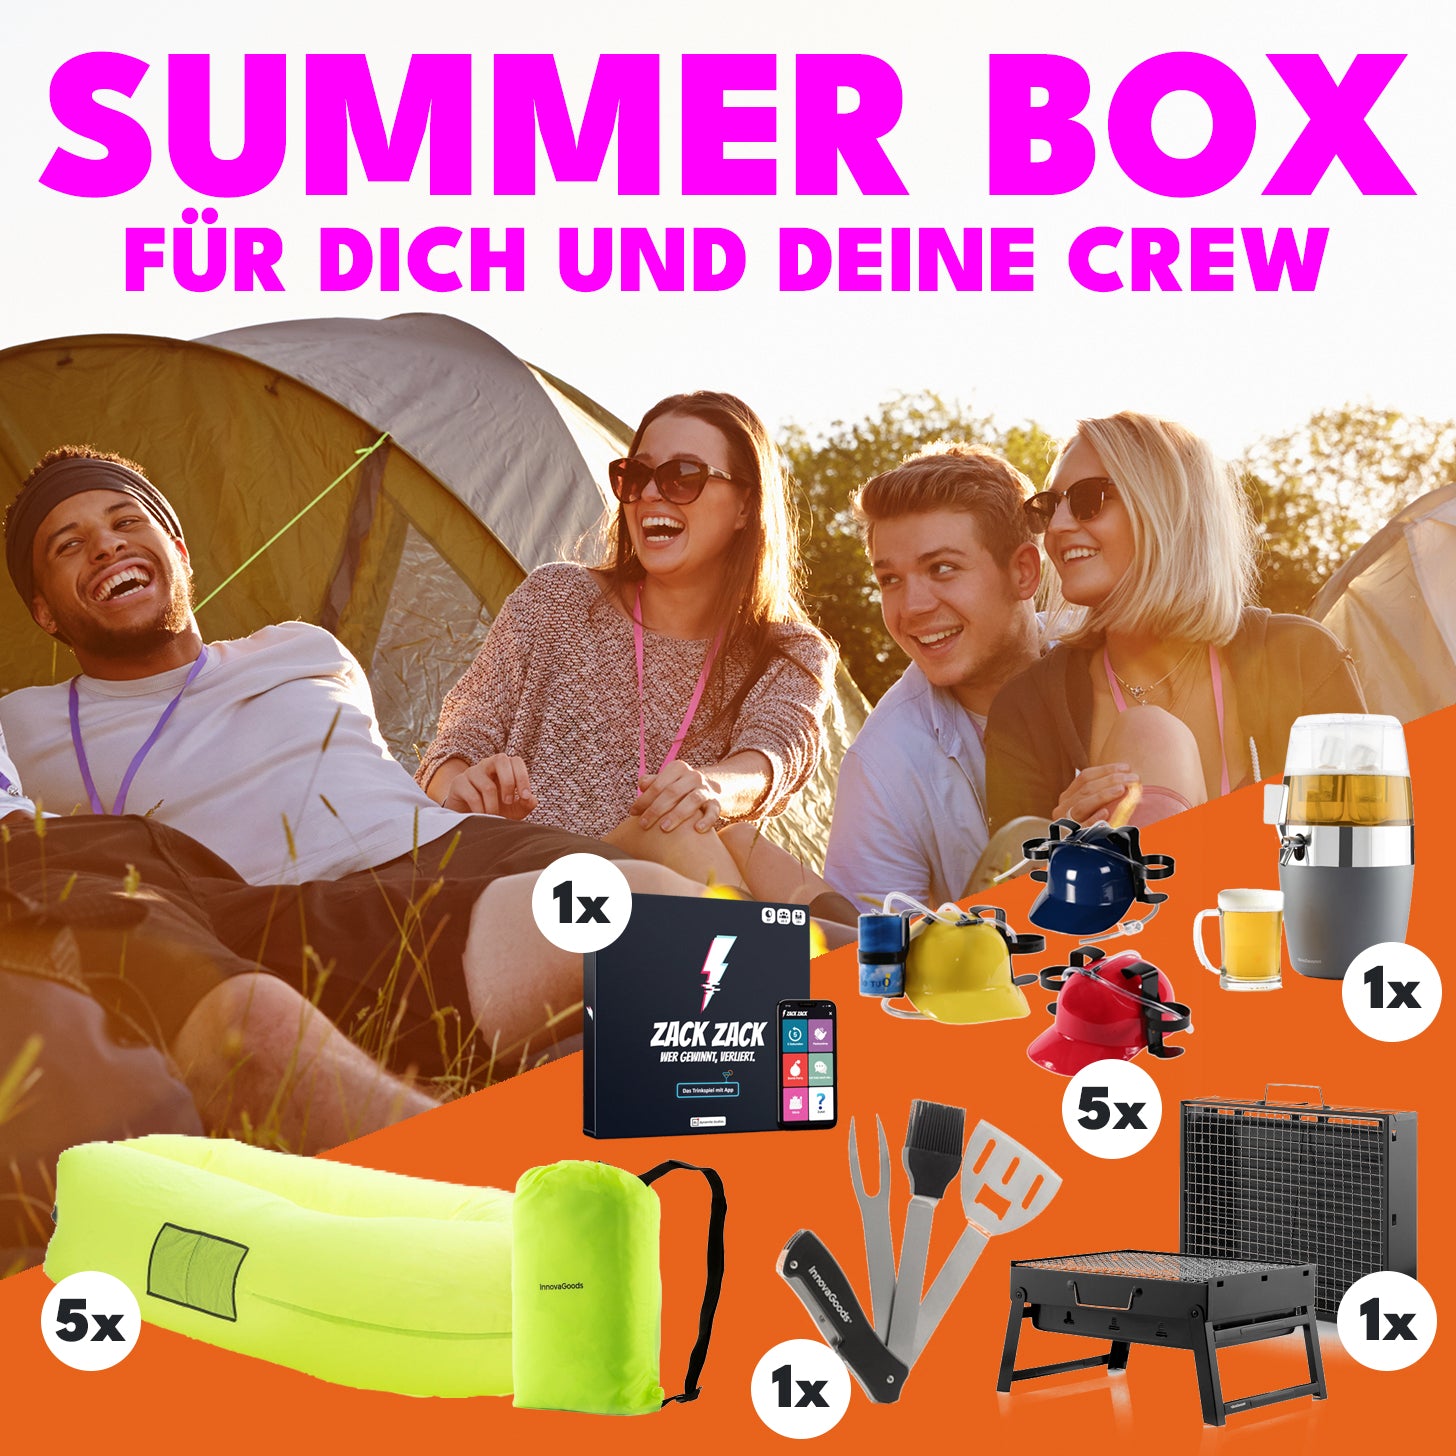 SUMMER BOX - Für dich und deine Crew